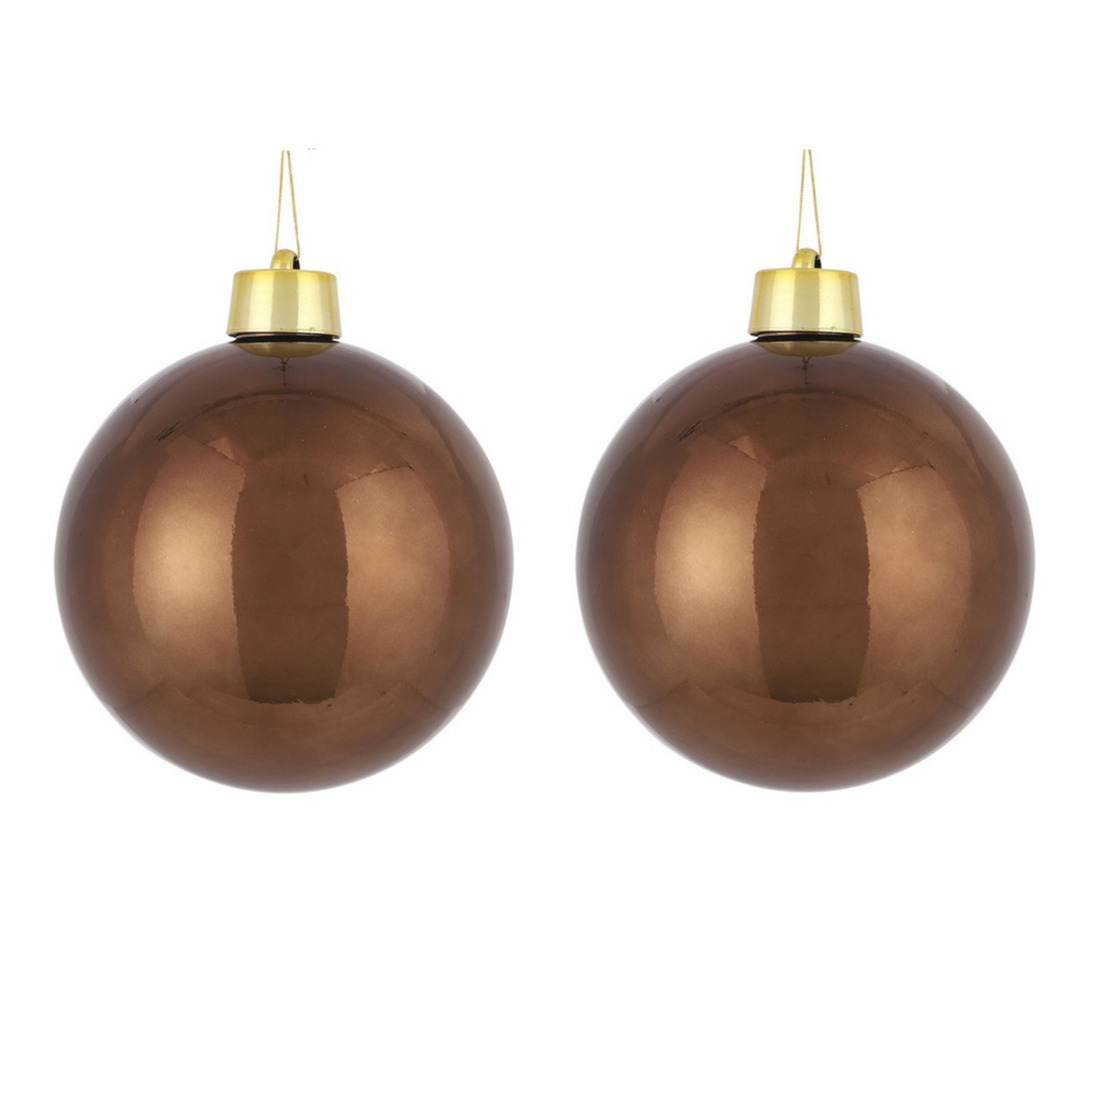 2x Grote kunststof decoratie kerstballen kastanje bruin 20 cm